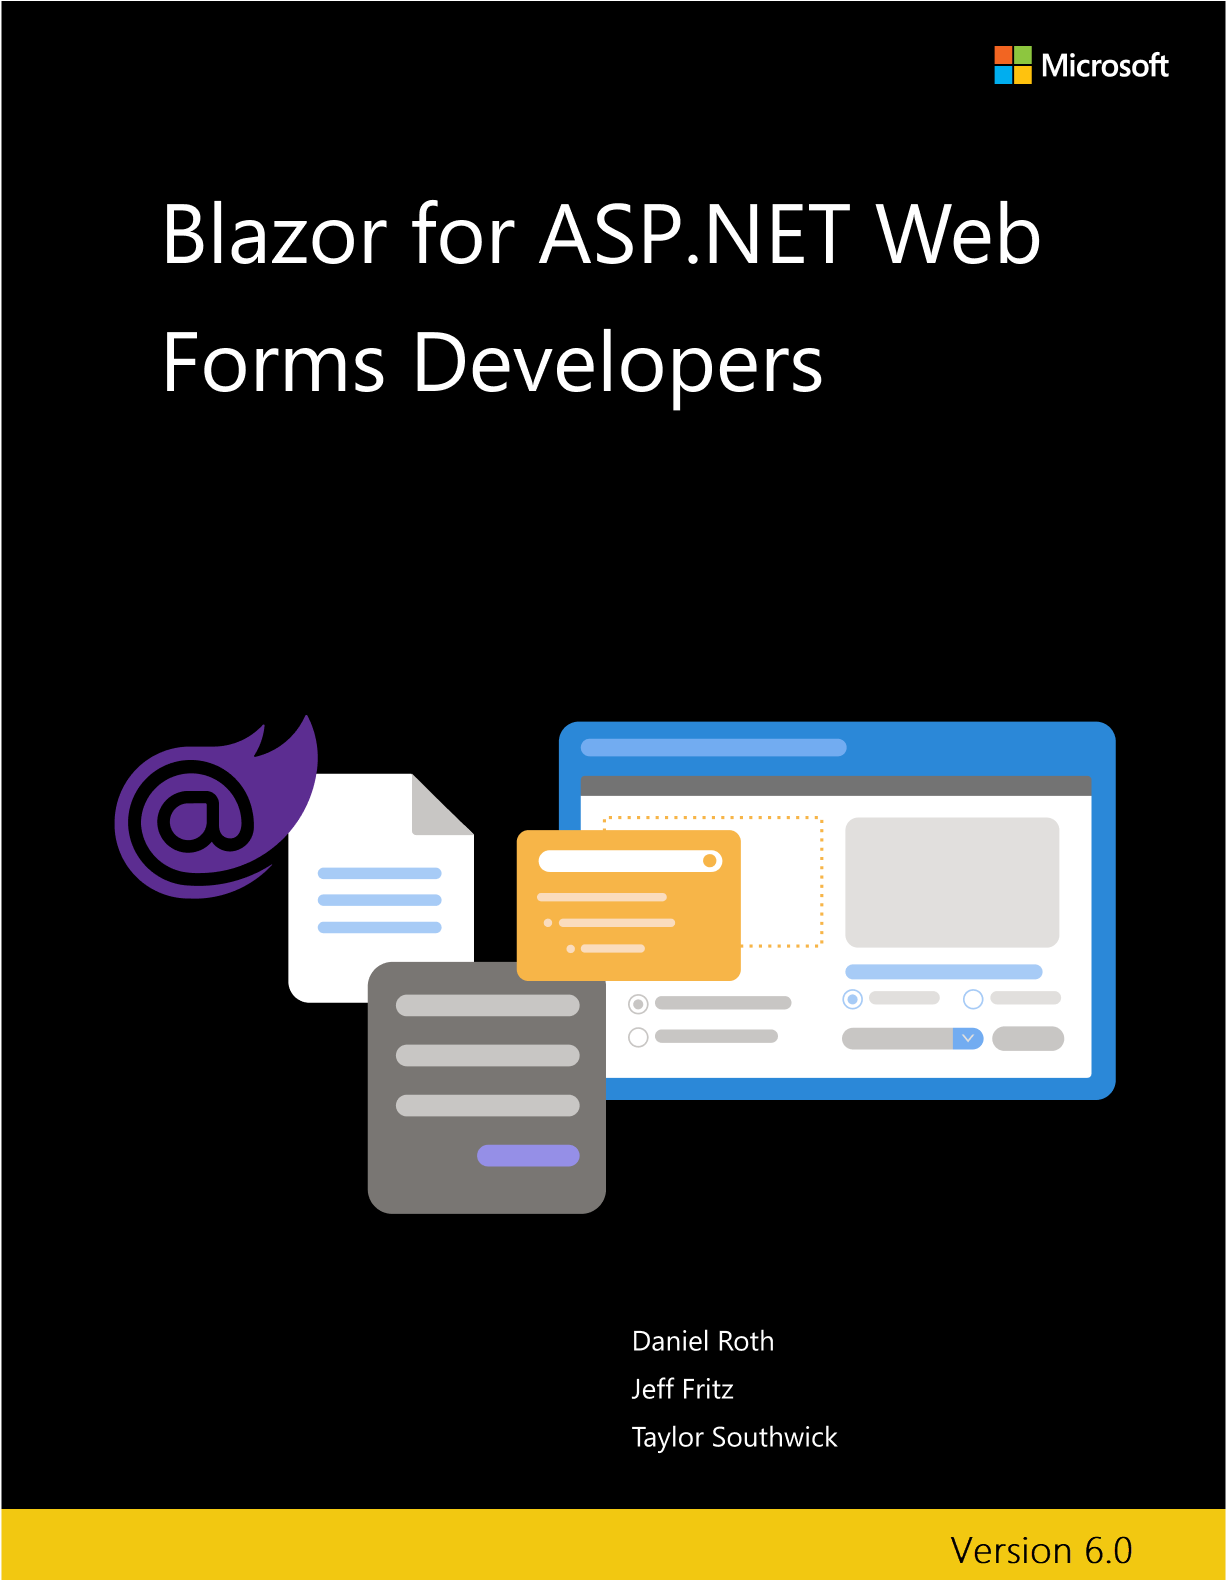 Couverture du livre électronique Blazor pour les développeurs ASP.NET Web Forms.